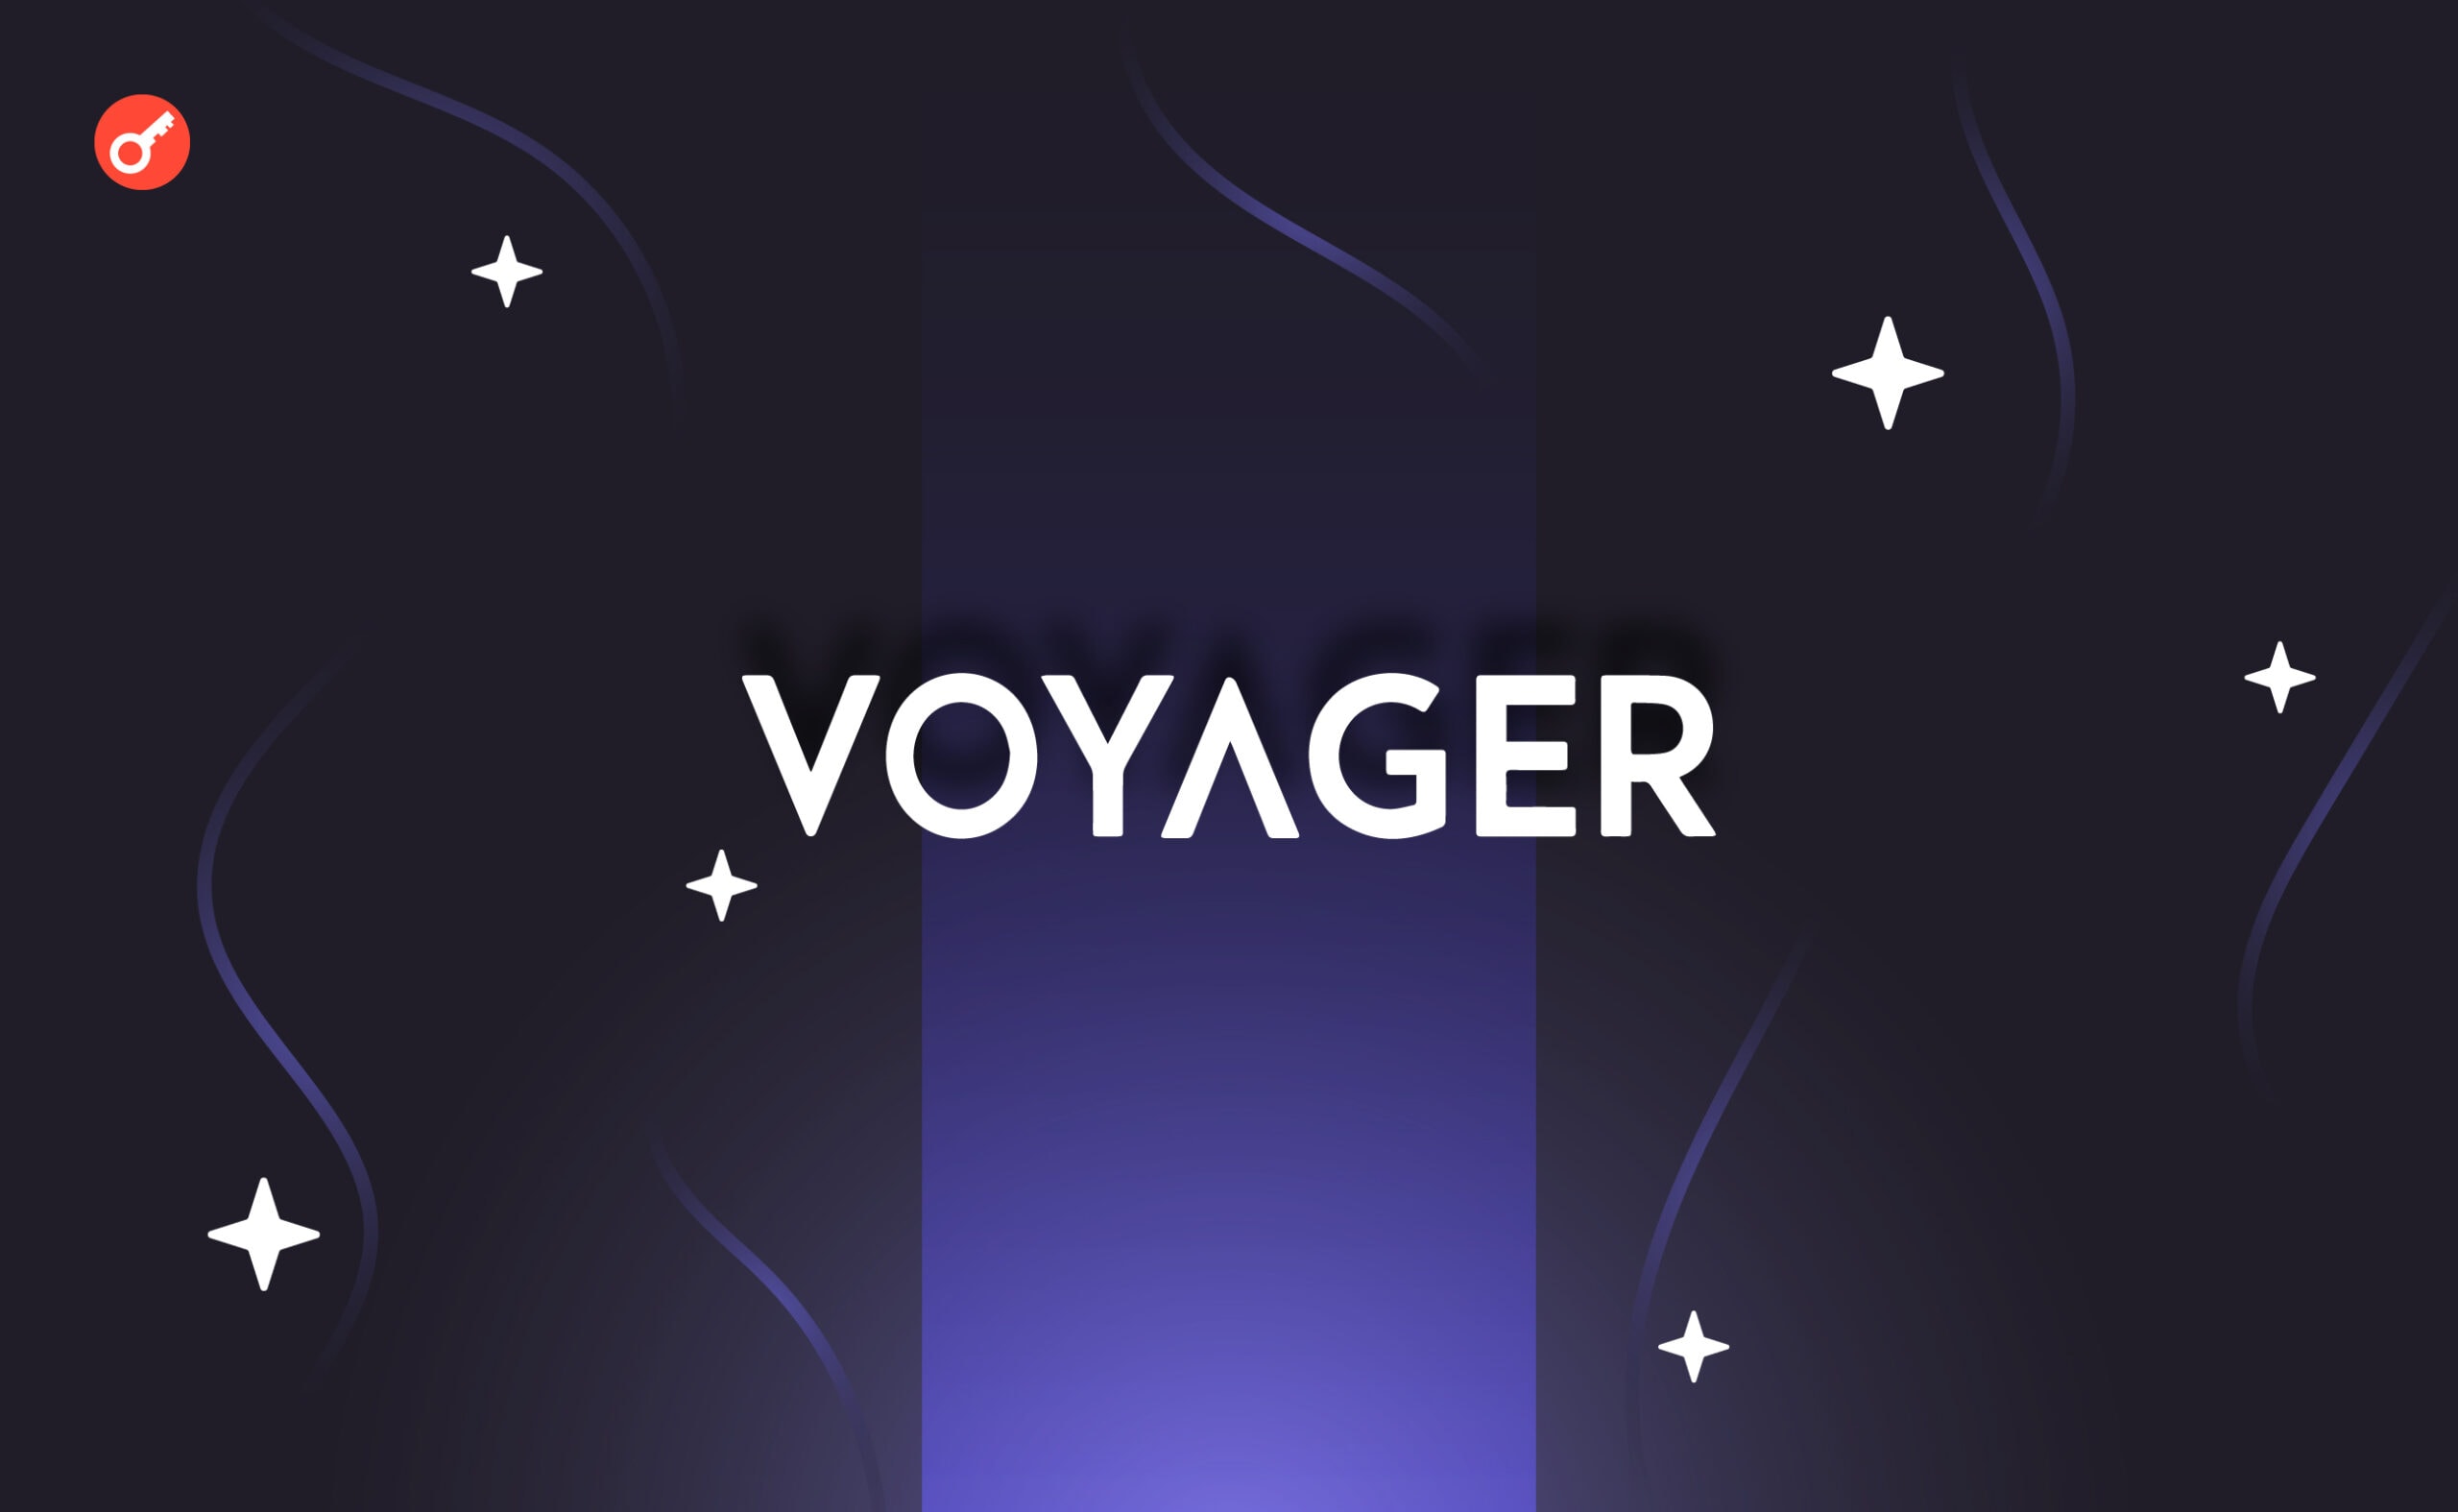 Під час виведення коштів з Voyager клієнти стали мішенями для шахраїв. Головний колаж новини.